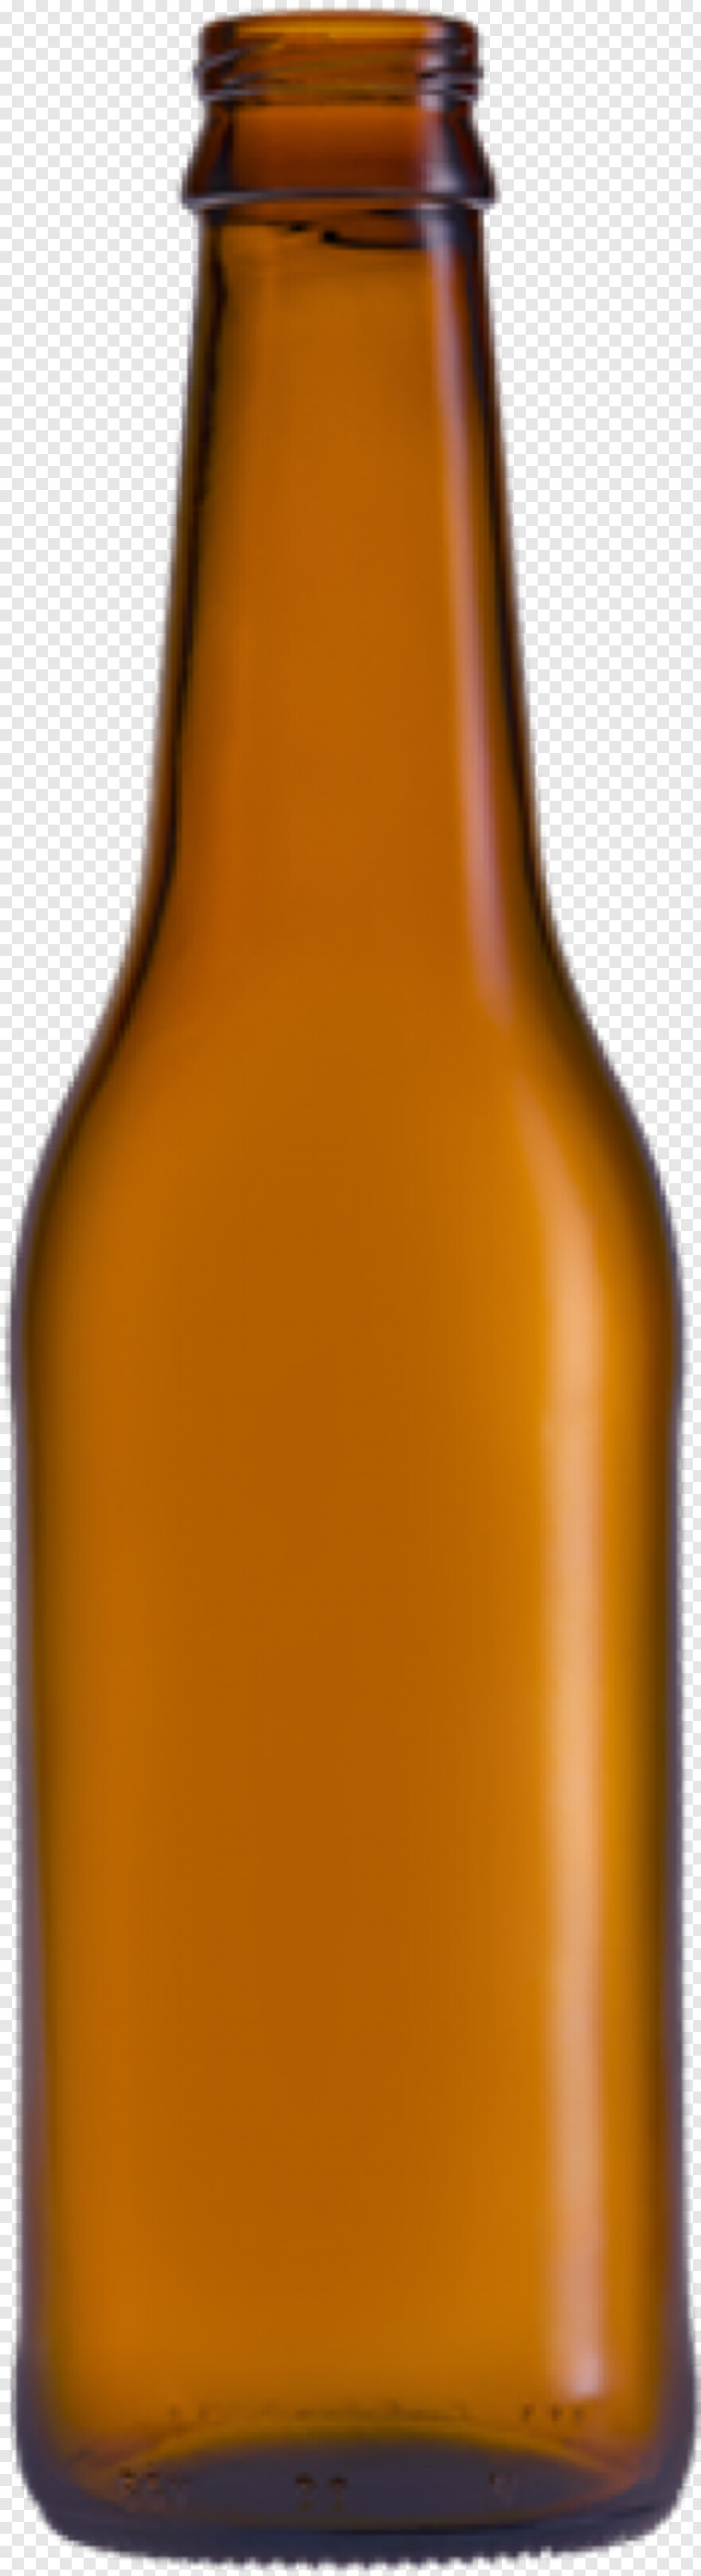 beer-bottle # 381298